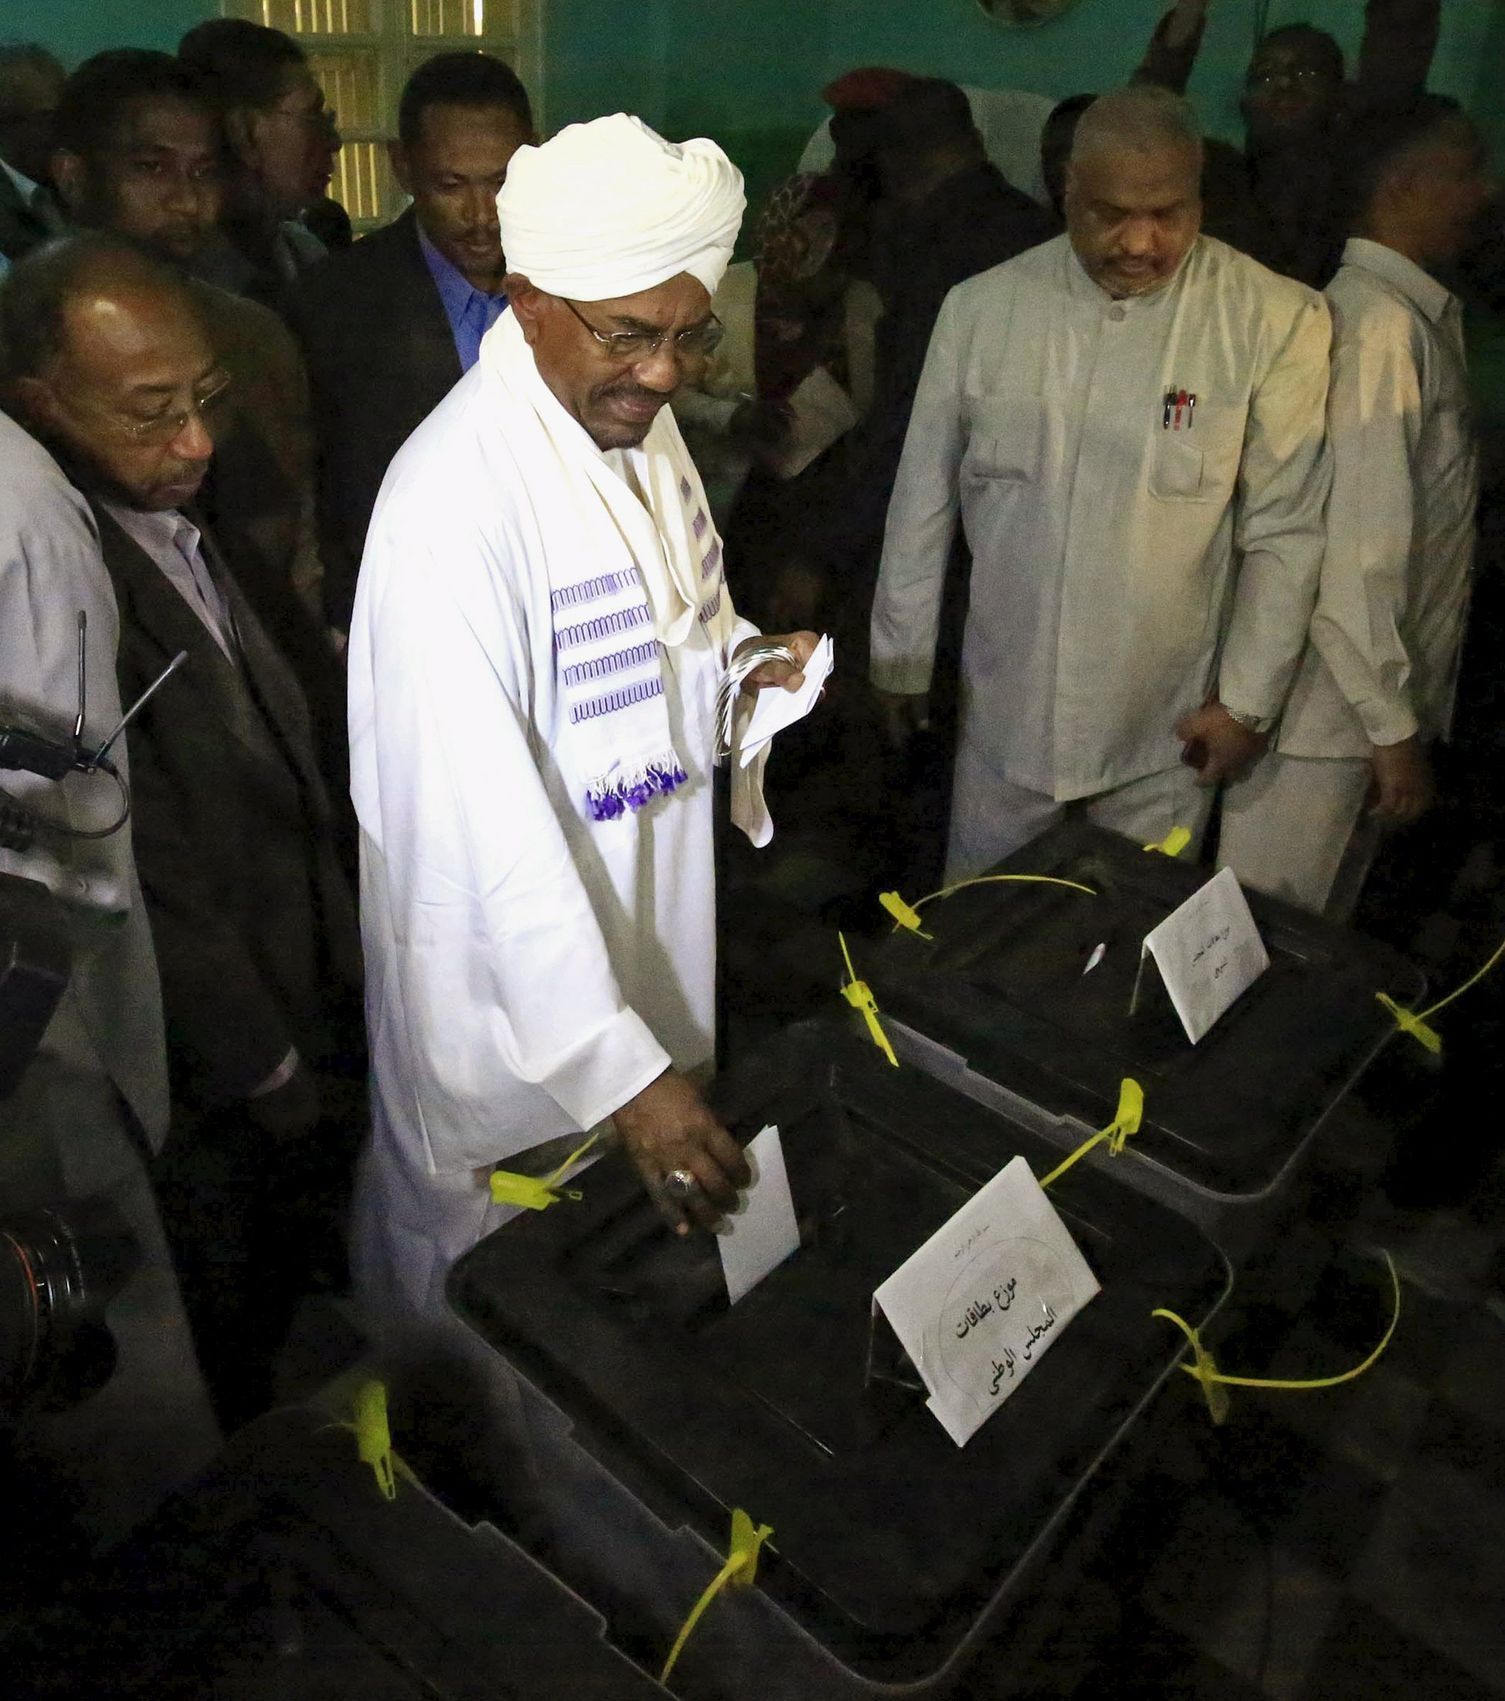 Súdánský prezident Umar Bašír